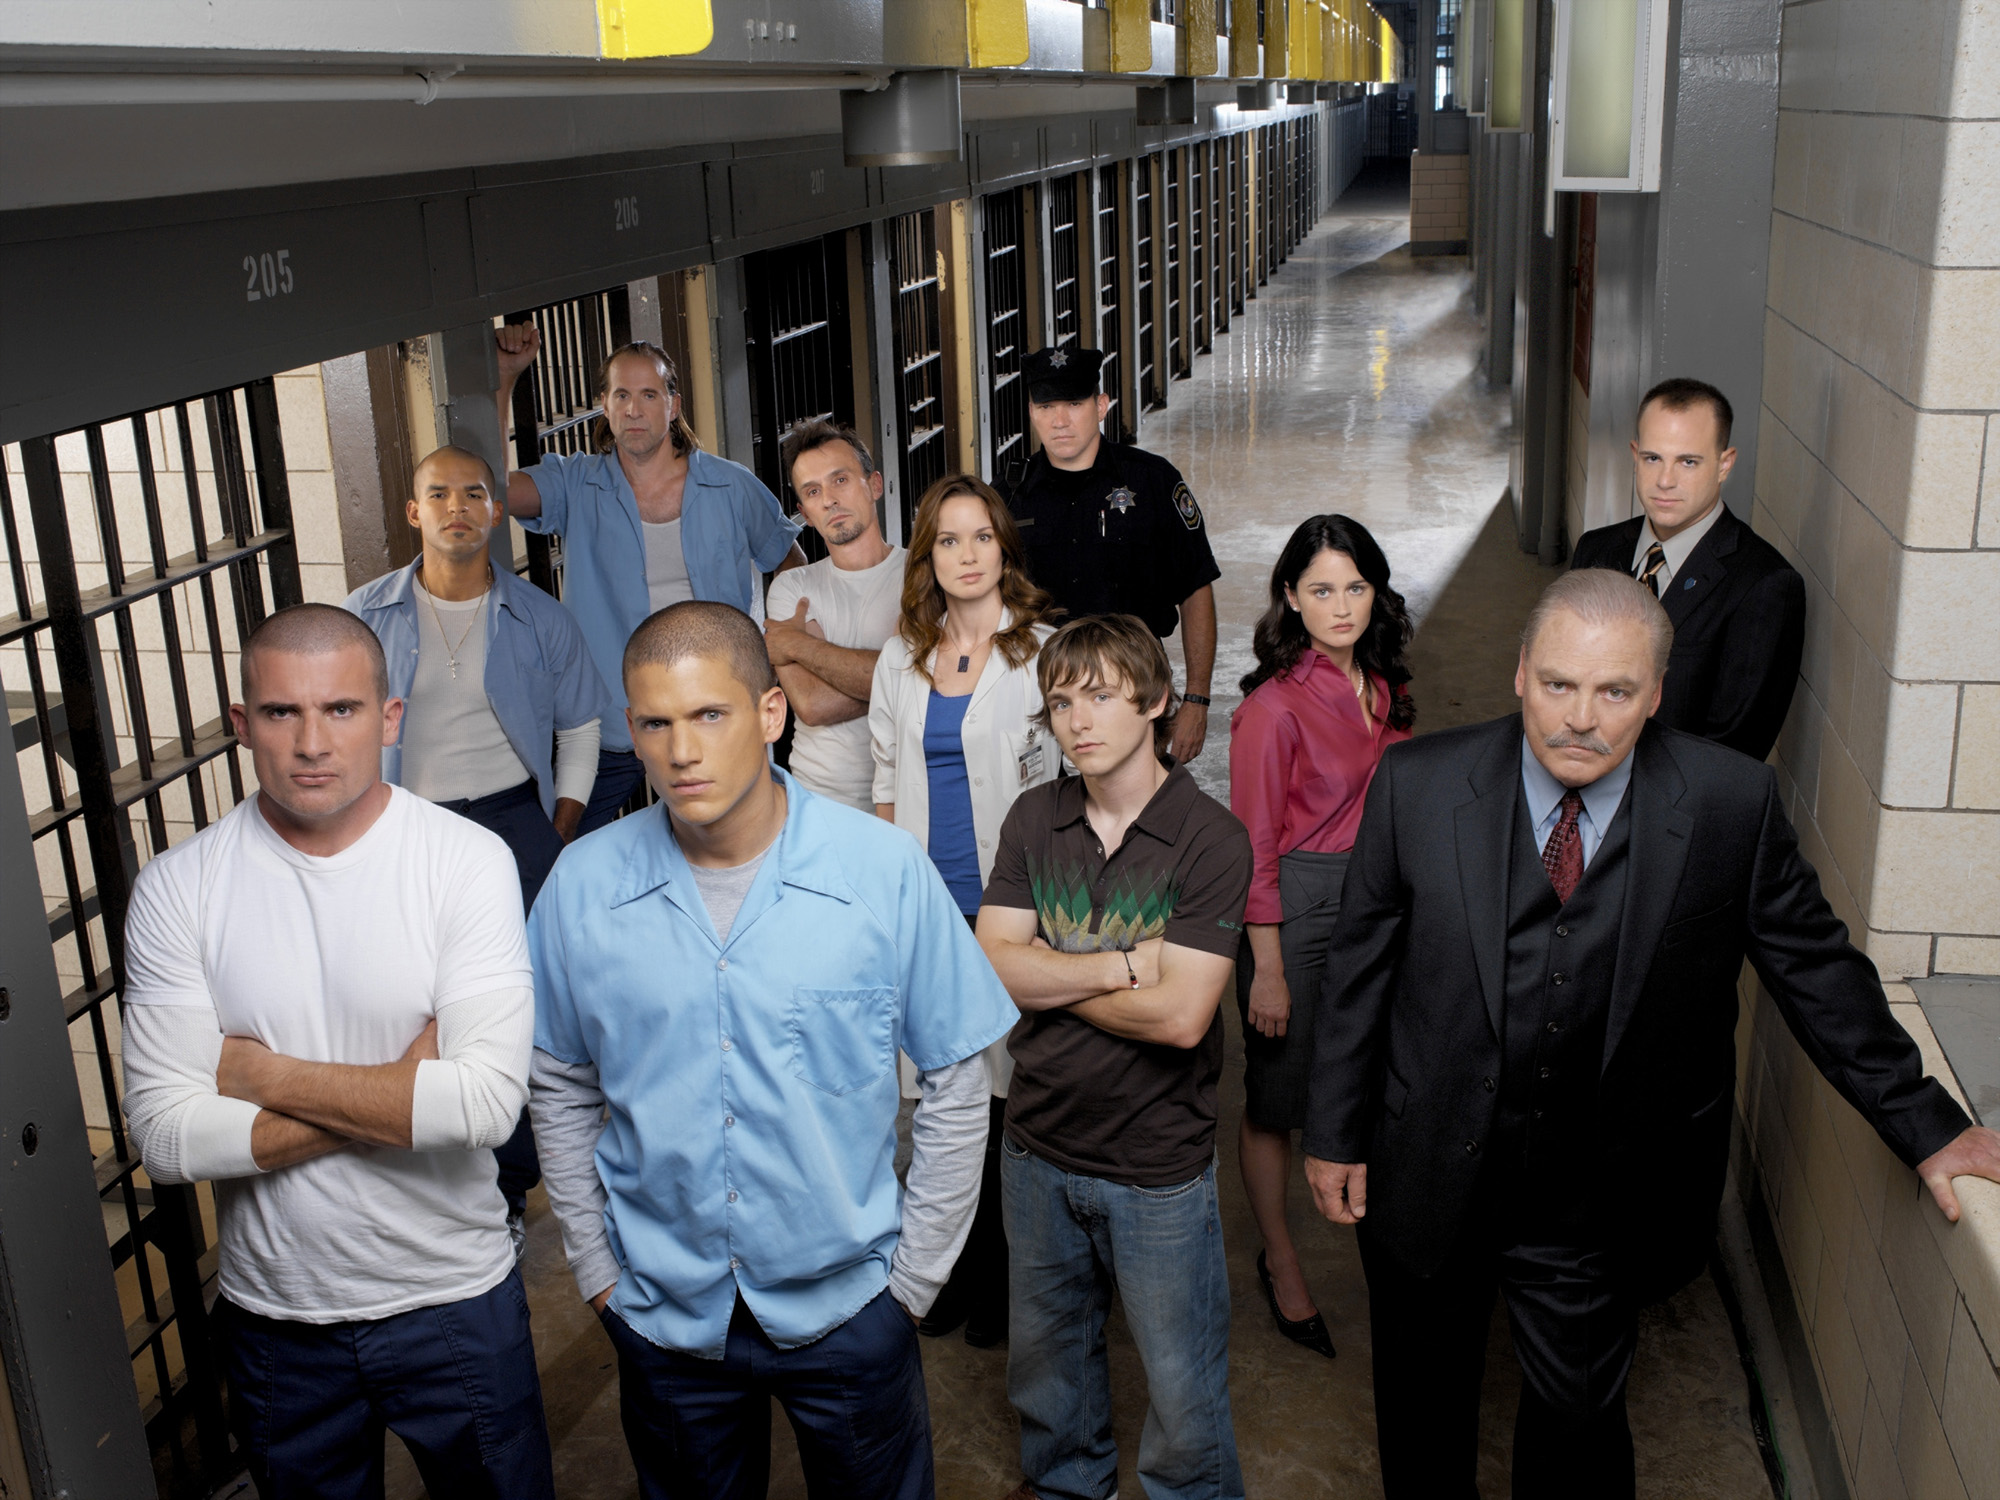 prison break season 1 episode 1 cast